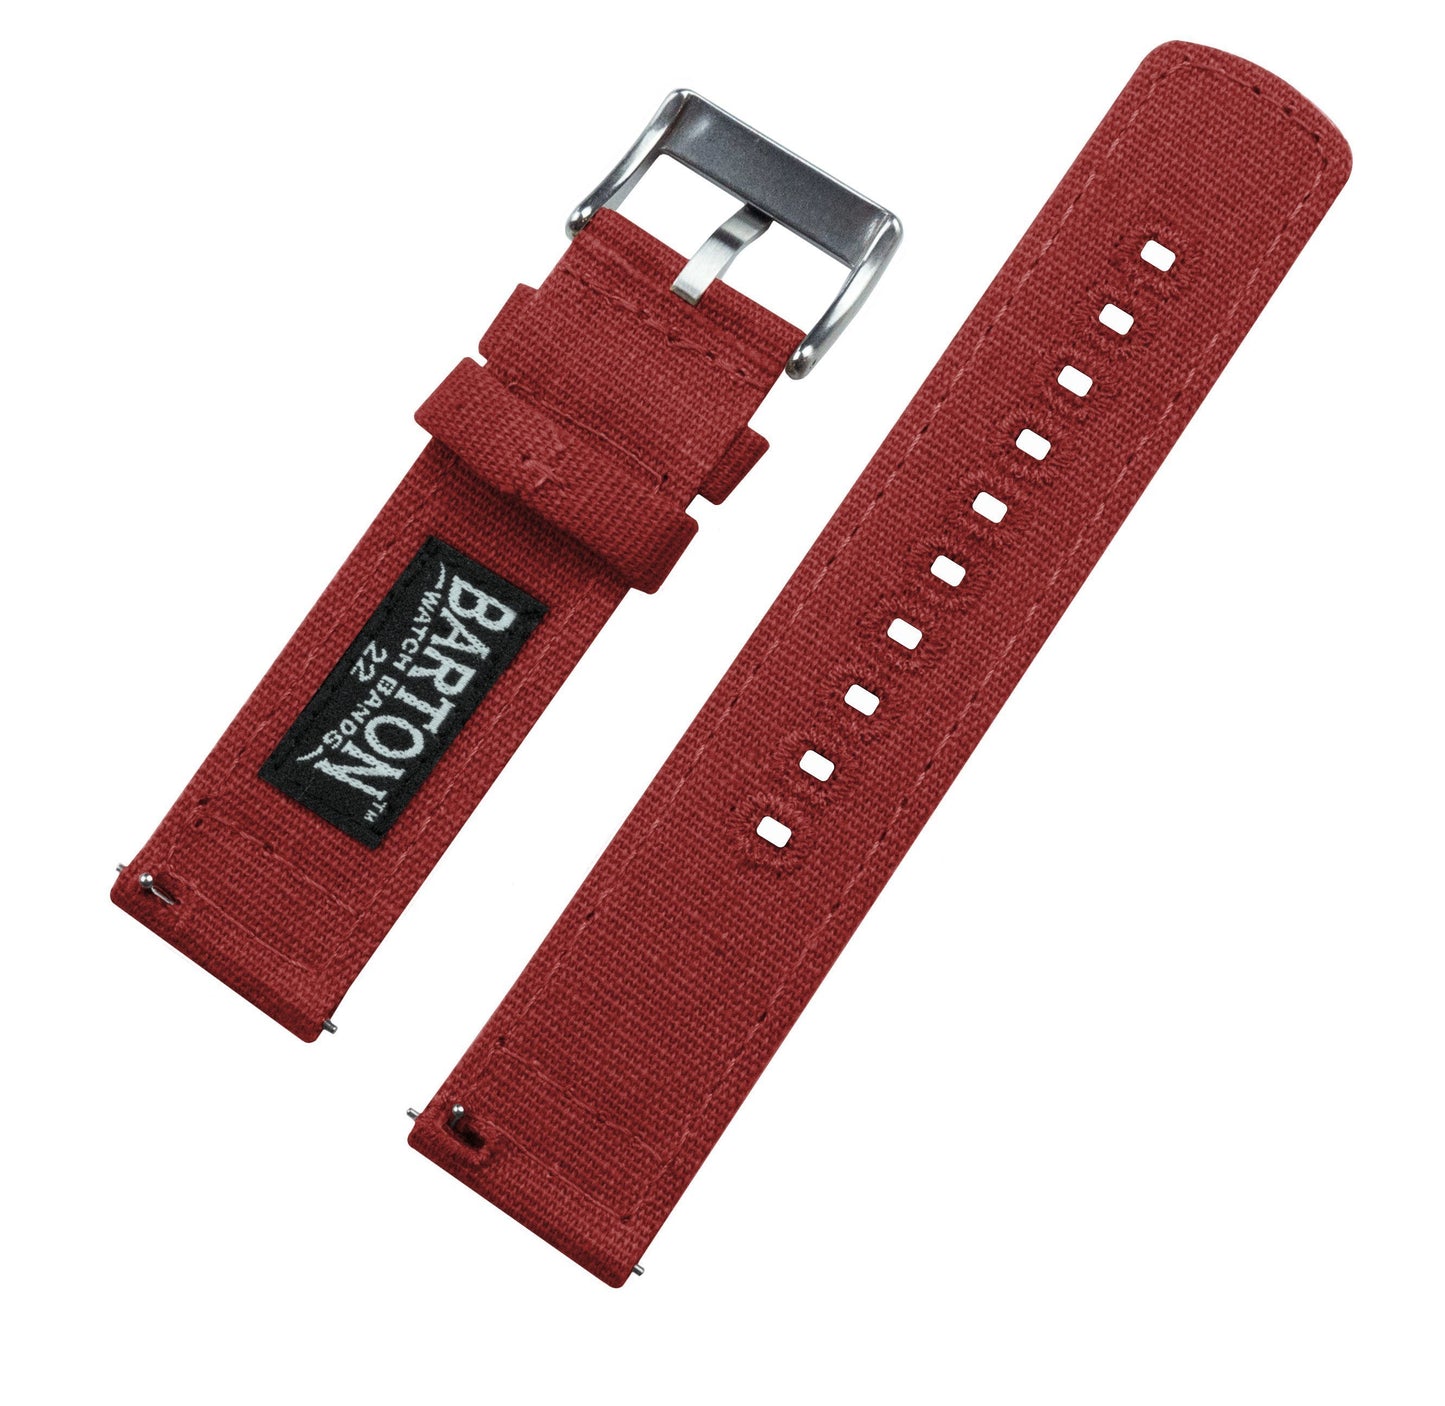 Samsung Galaxy Watch | Crimson Red Canvas - Barton Watch Bands